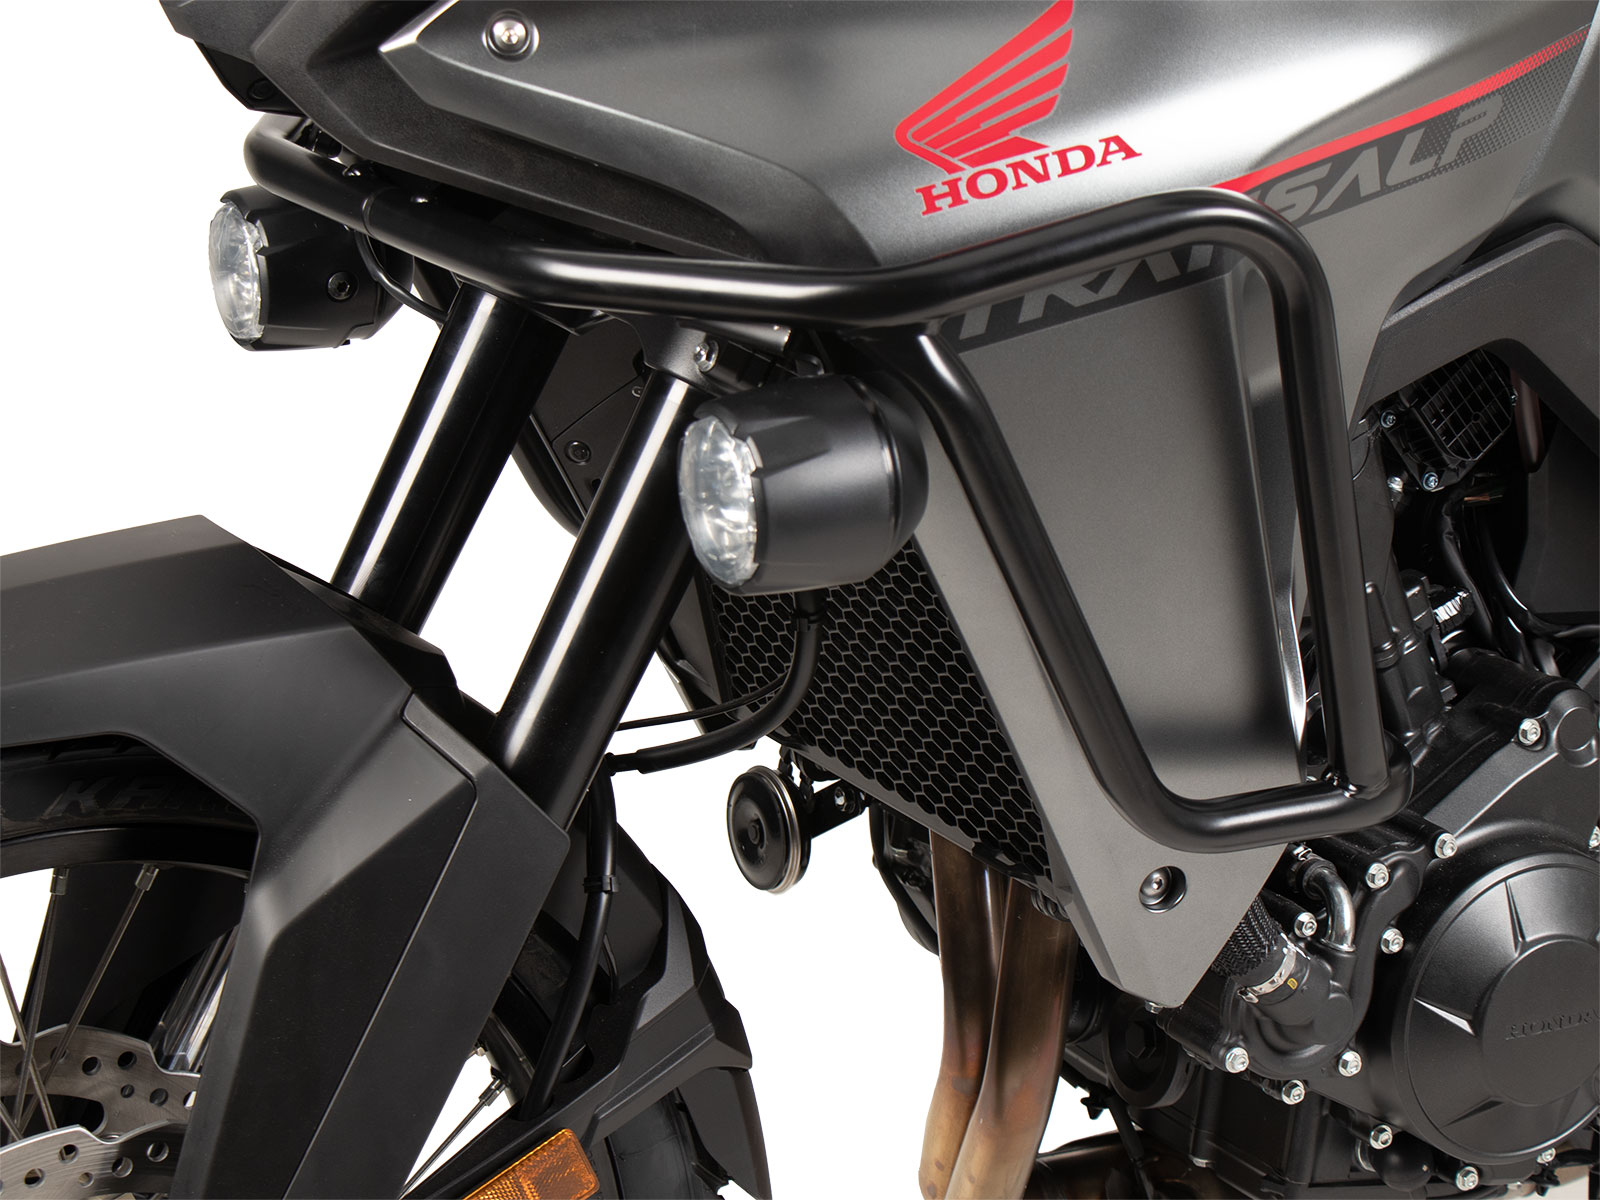 Hepco & Becker Honda Motorcycle Accessories